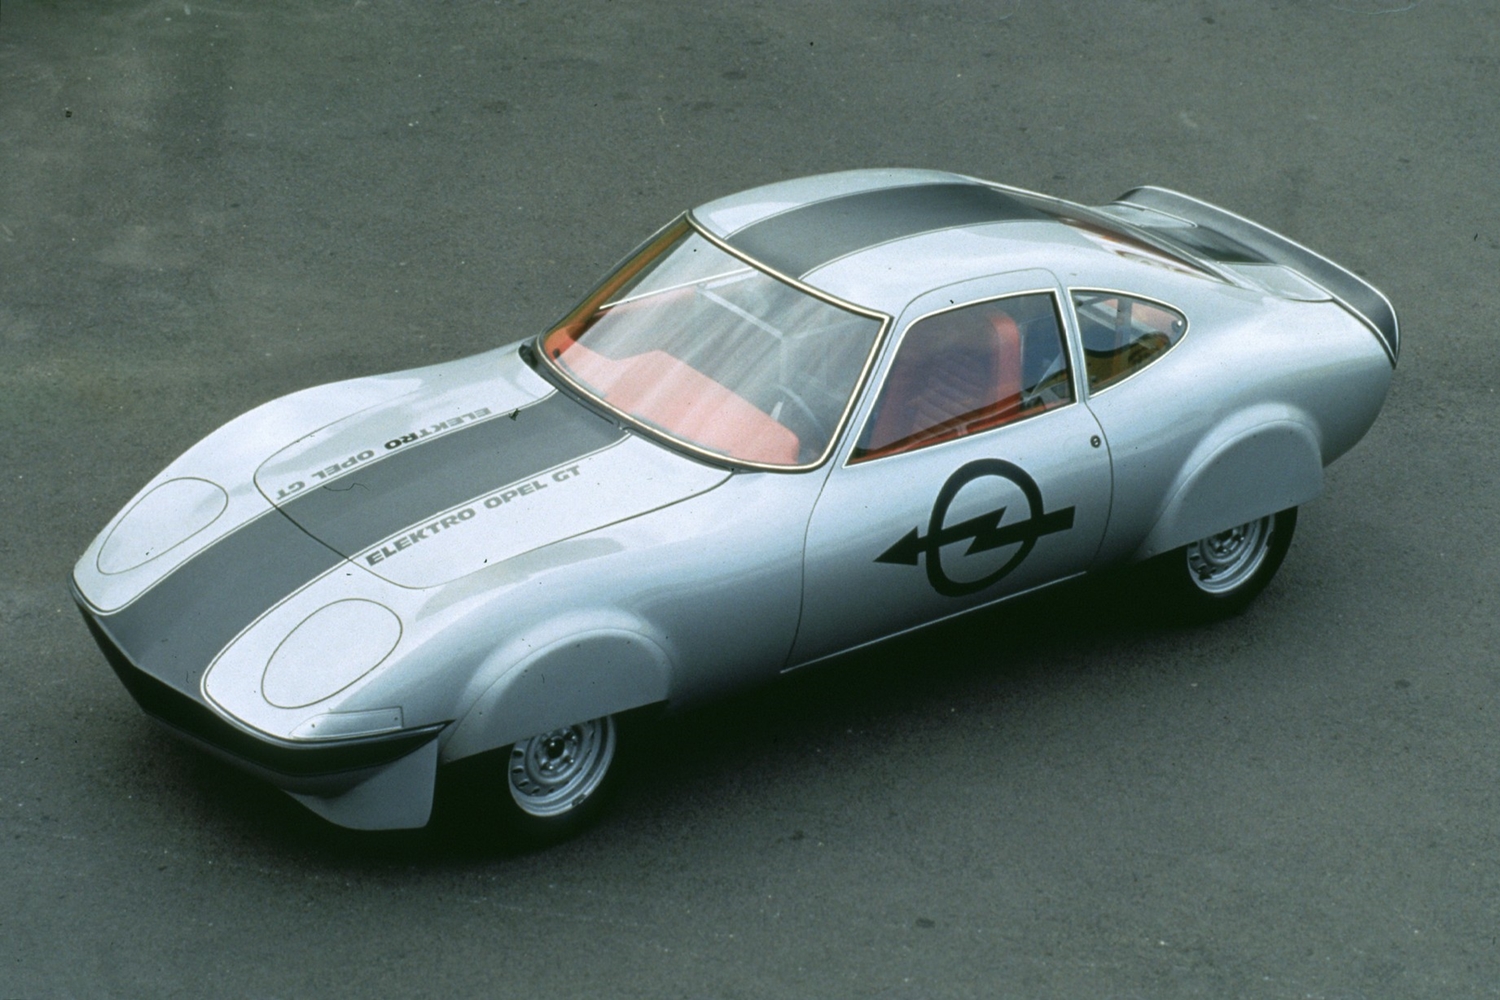 Az Opel már 50 éve is nagyon hitt az elektromos autózásban 4